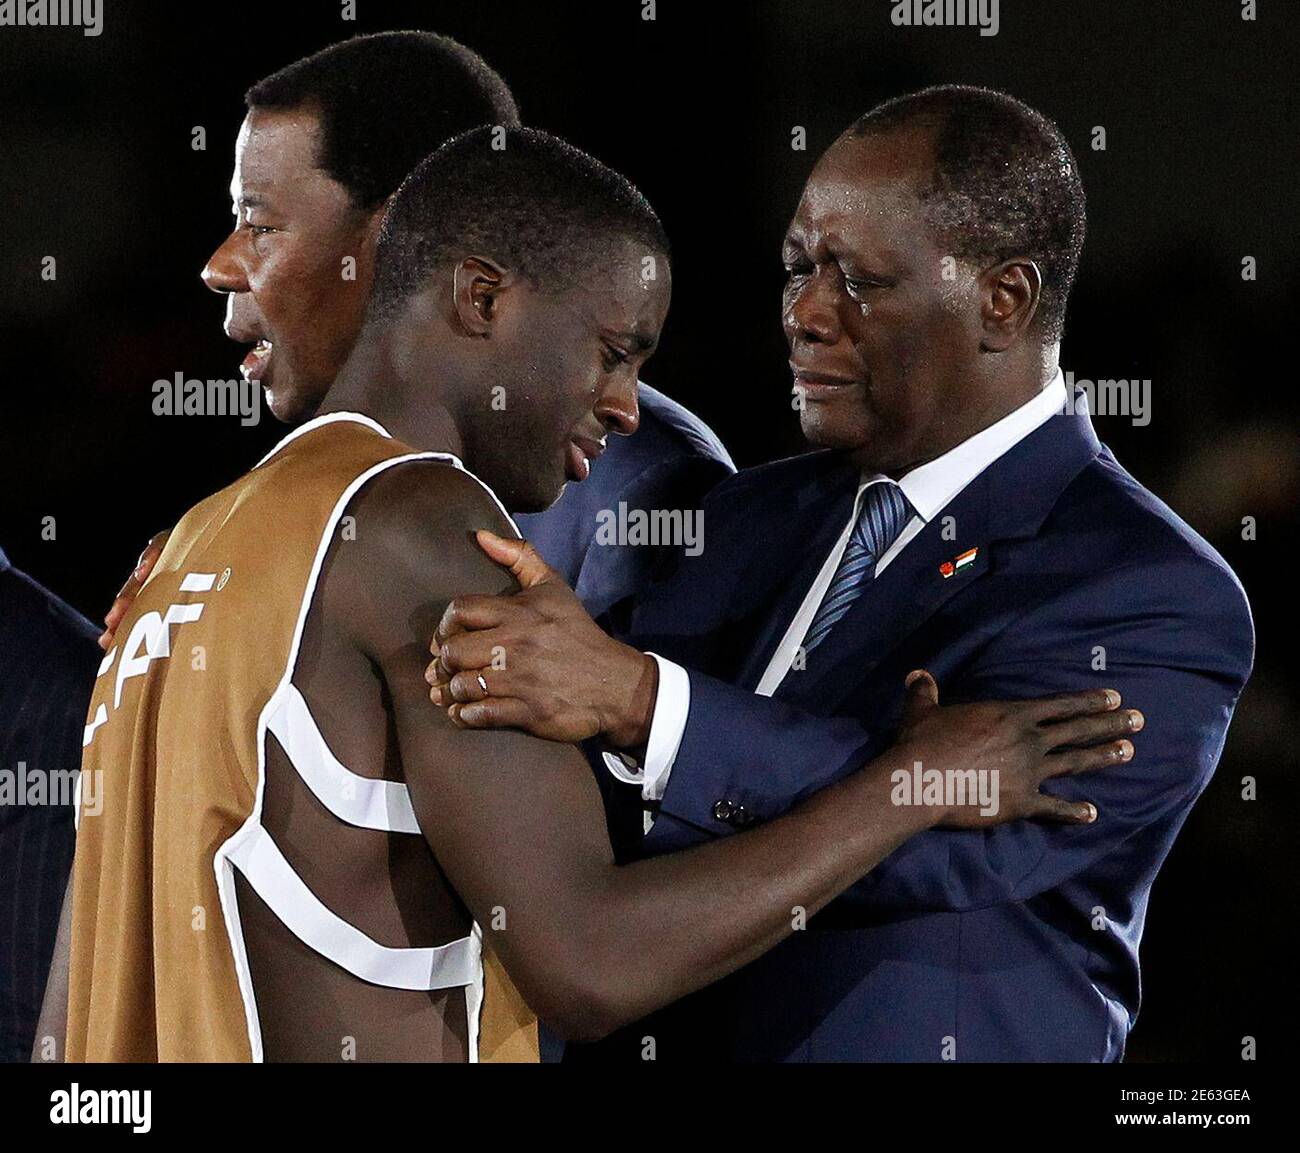 Il presidente della Costa d'Avorio Alassane Ouattara (R) console il suo calciatore nazionale Yaya Toure dopo aver perso in Zambia nelle finali dei tornei della Coppa delle Nazioni africana del 2012 allo Stade De l'Amitie Stadium di Libreville, capitale del Gabon, il 12 febbraio 2012. REUTERS/THOMAS MUKOYA (GABON - TAGS: SPORT CALCIO POLITICA TPX IMMAGINI DEL GIORNO) Foto Stock